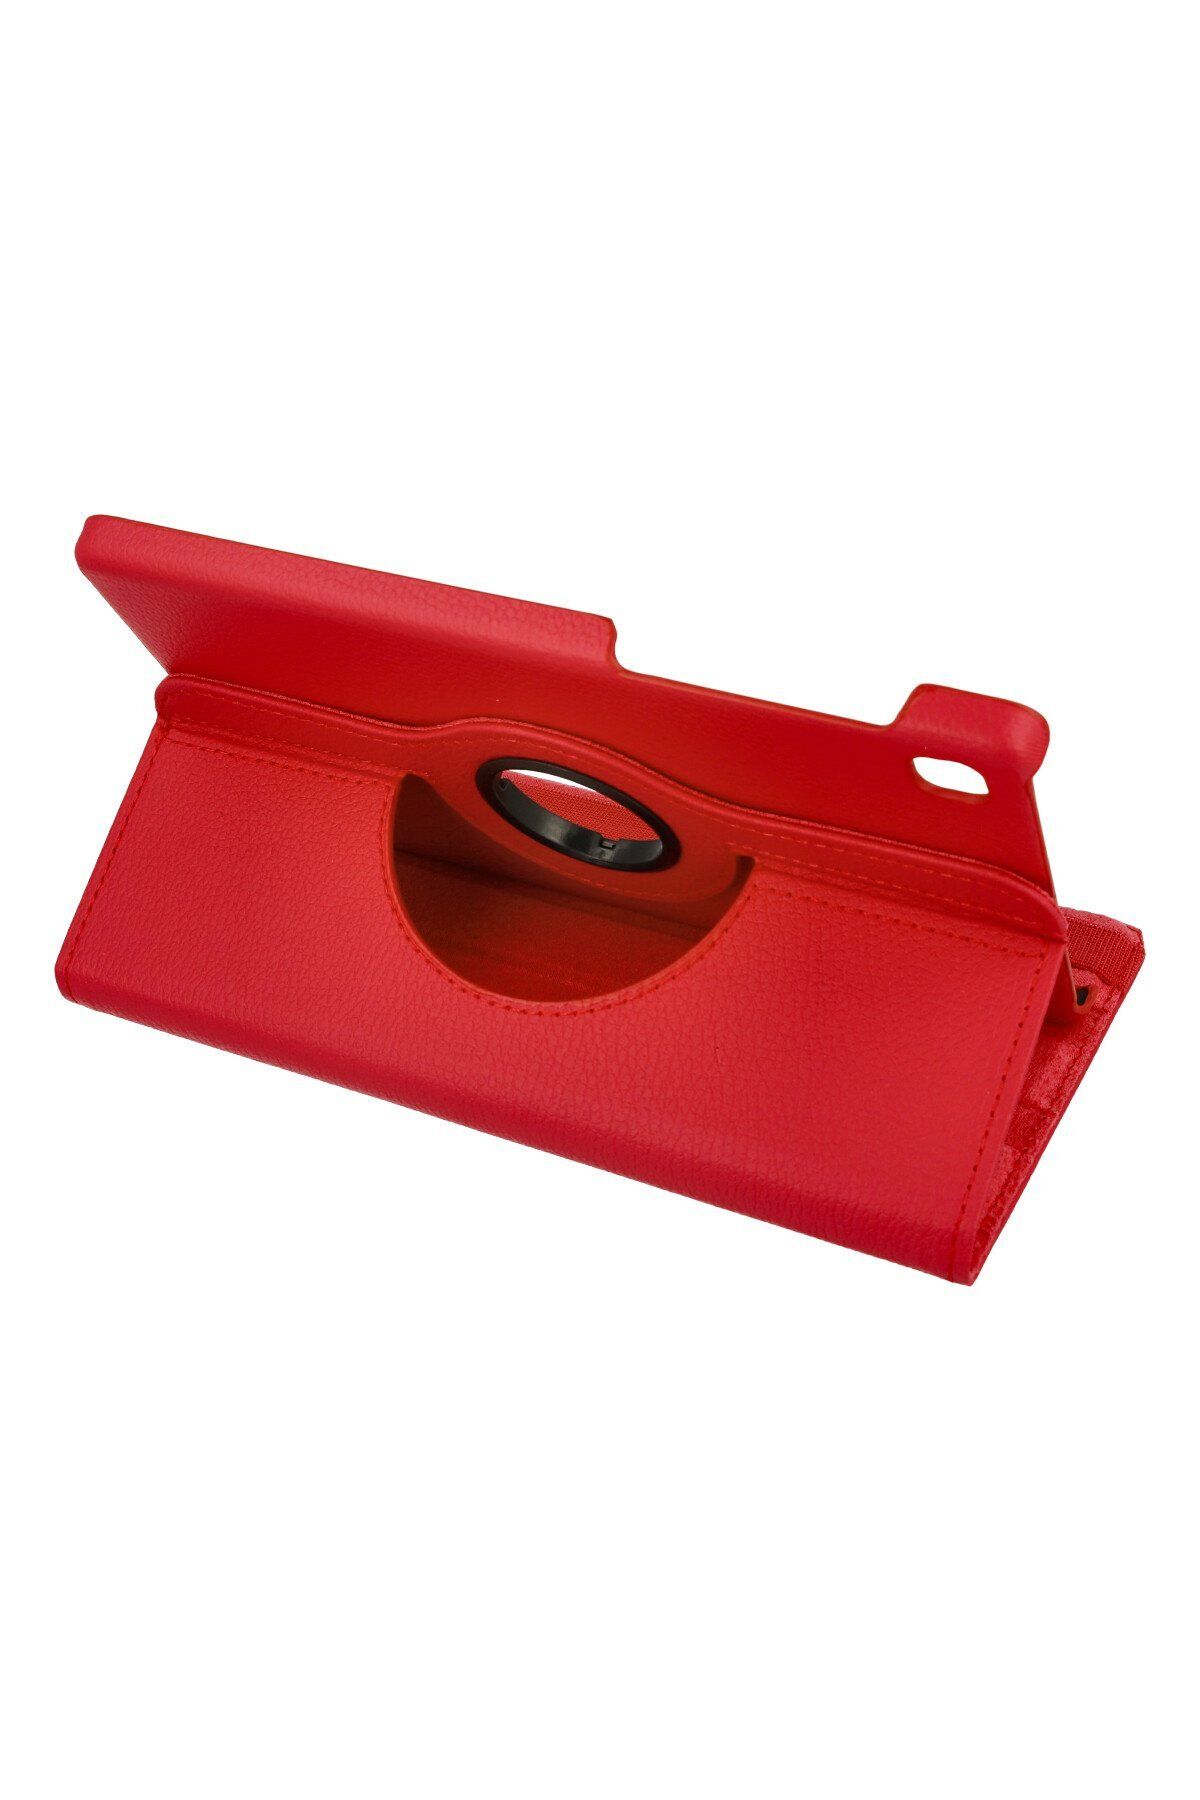 AQUA AKSESUAR Galaxy Tab A7 Lite T225 Uyumlu 360 Dönerli Deri Korumalı Tablet Kılıfı - Kırmızı